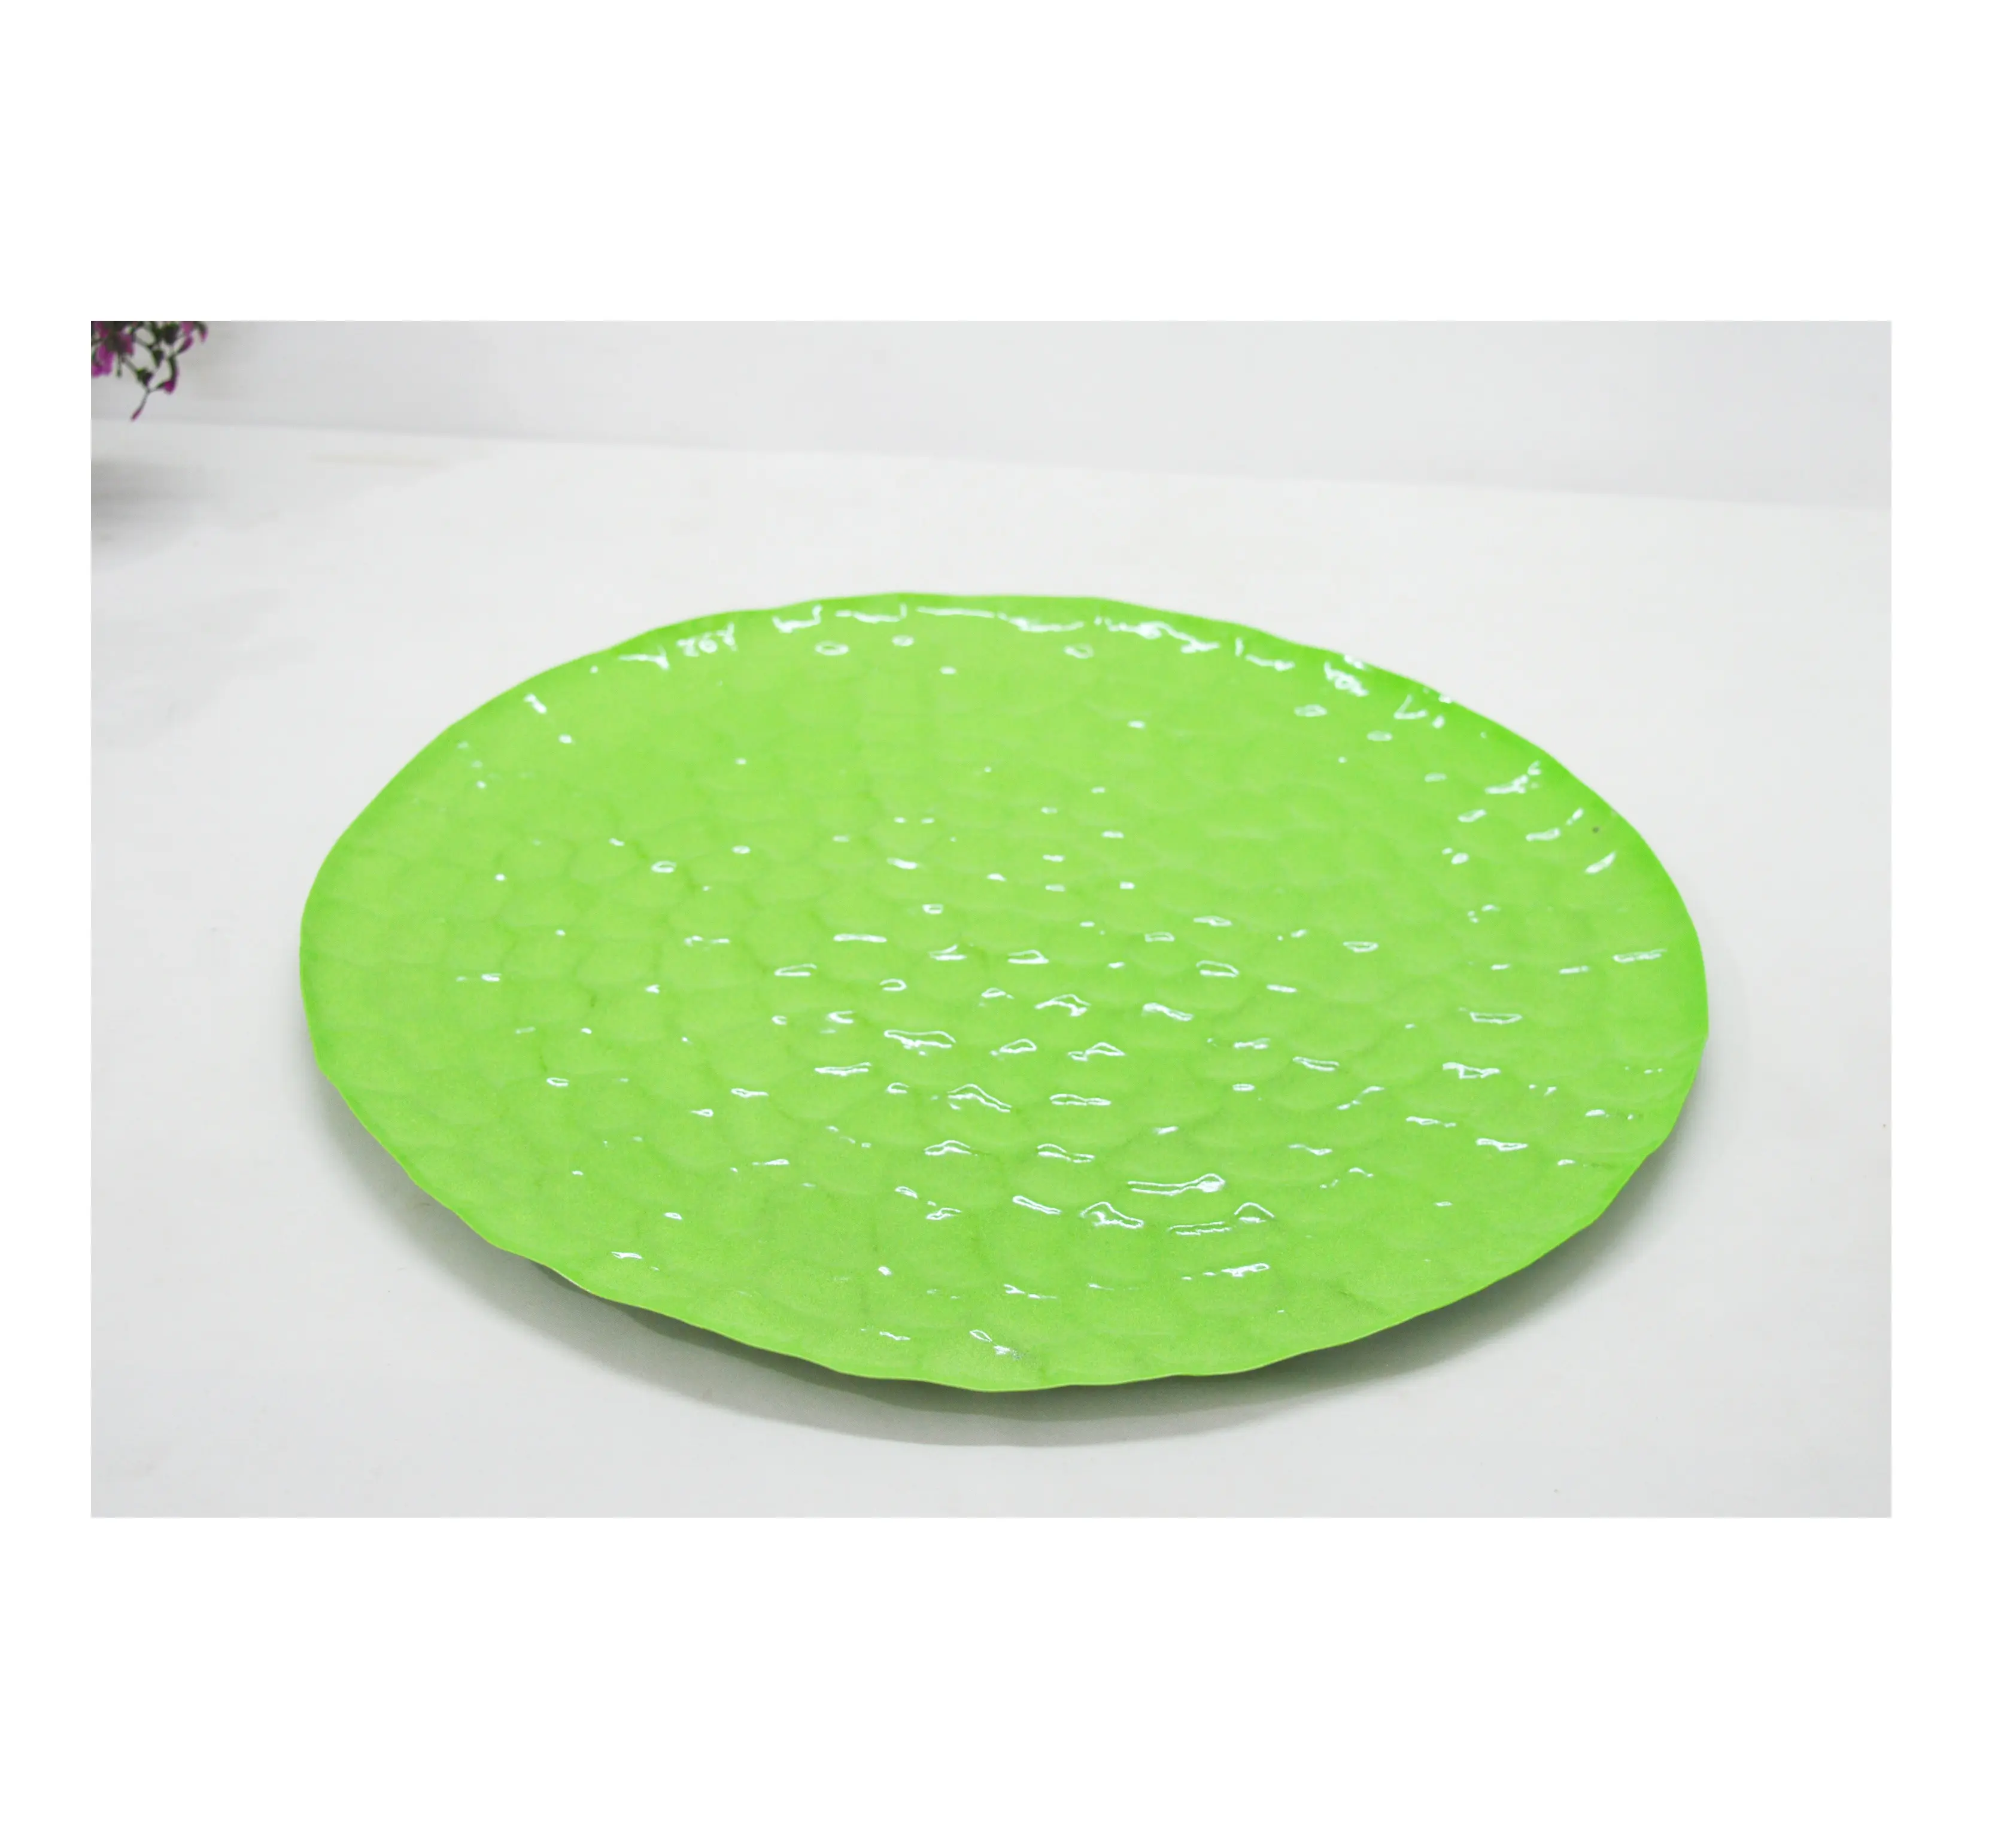 Eisen Phantasie Pulver beschichtete grüne Vintage-Stil Runde Serviert eller Reis platte mit großen gehämmerten Muster Günstige Preis Runde Tablett